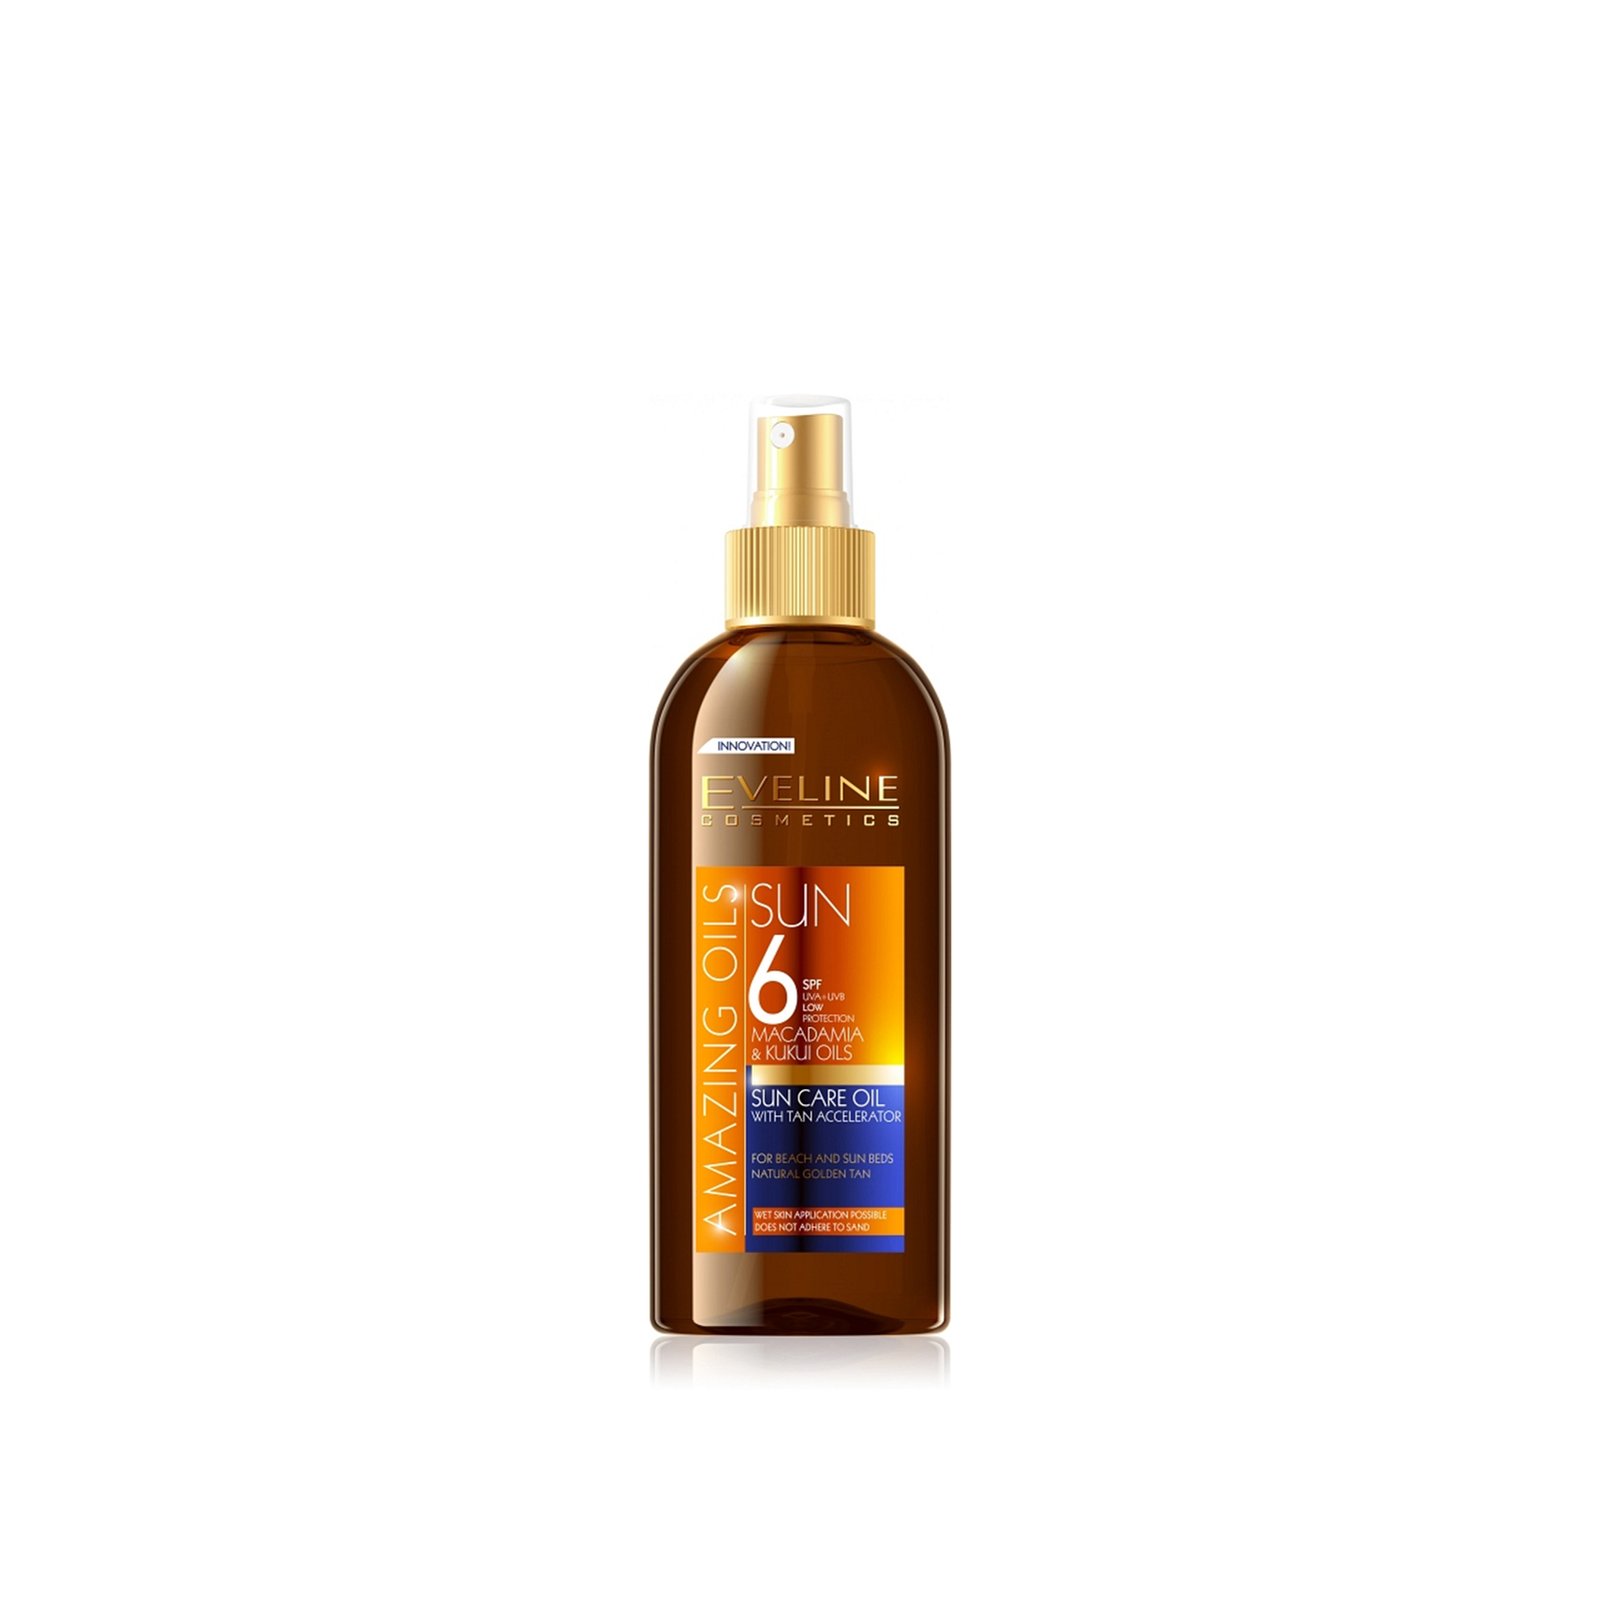 Eveline Cosmetics Amazing Oils Sun Care Oil With Tan Accelerator SPF6 150ml